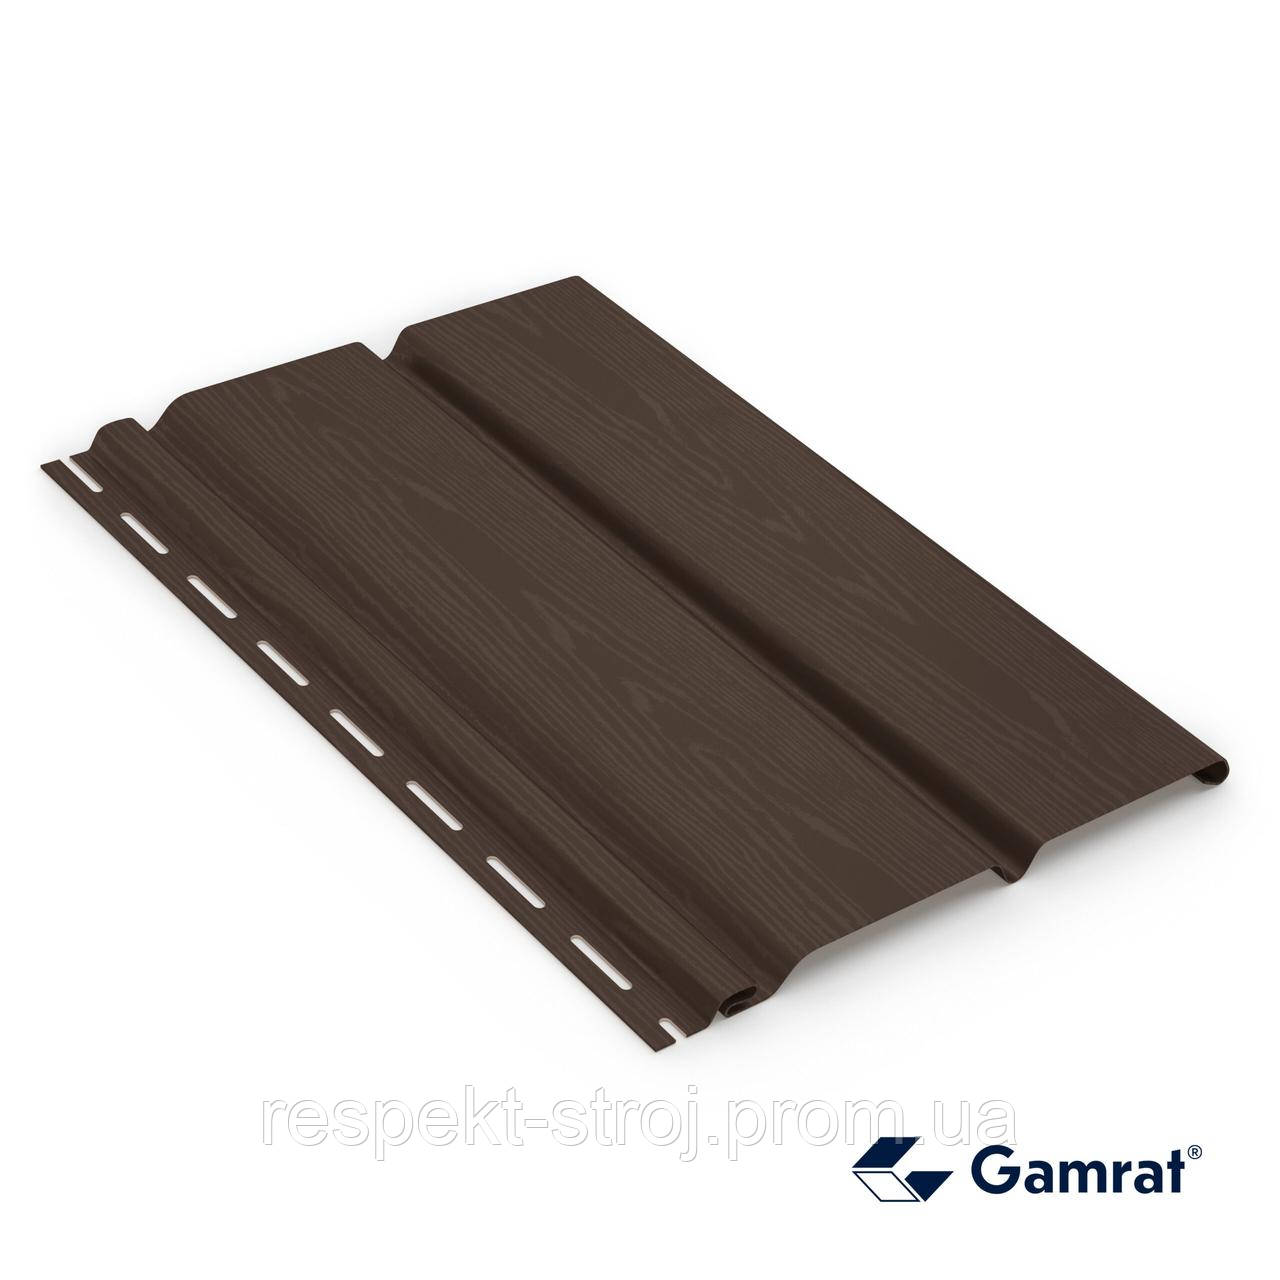 Софіт GARMAT панель не перфорована, темно-коричневий (8019), 3 м